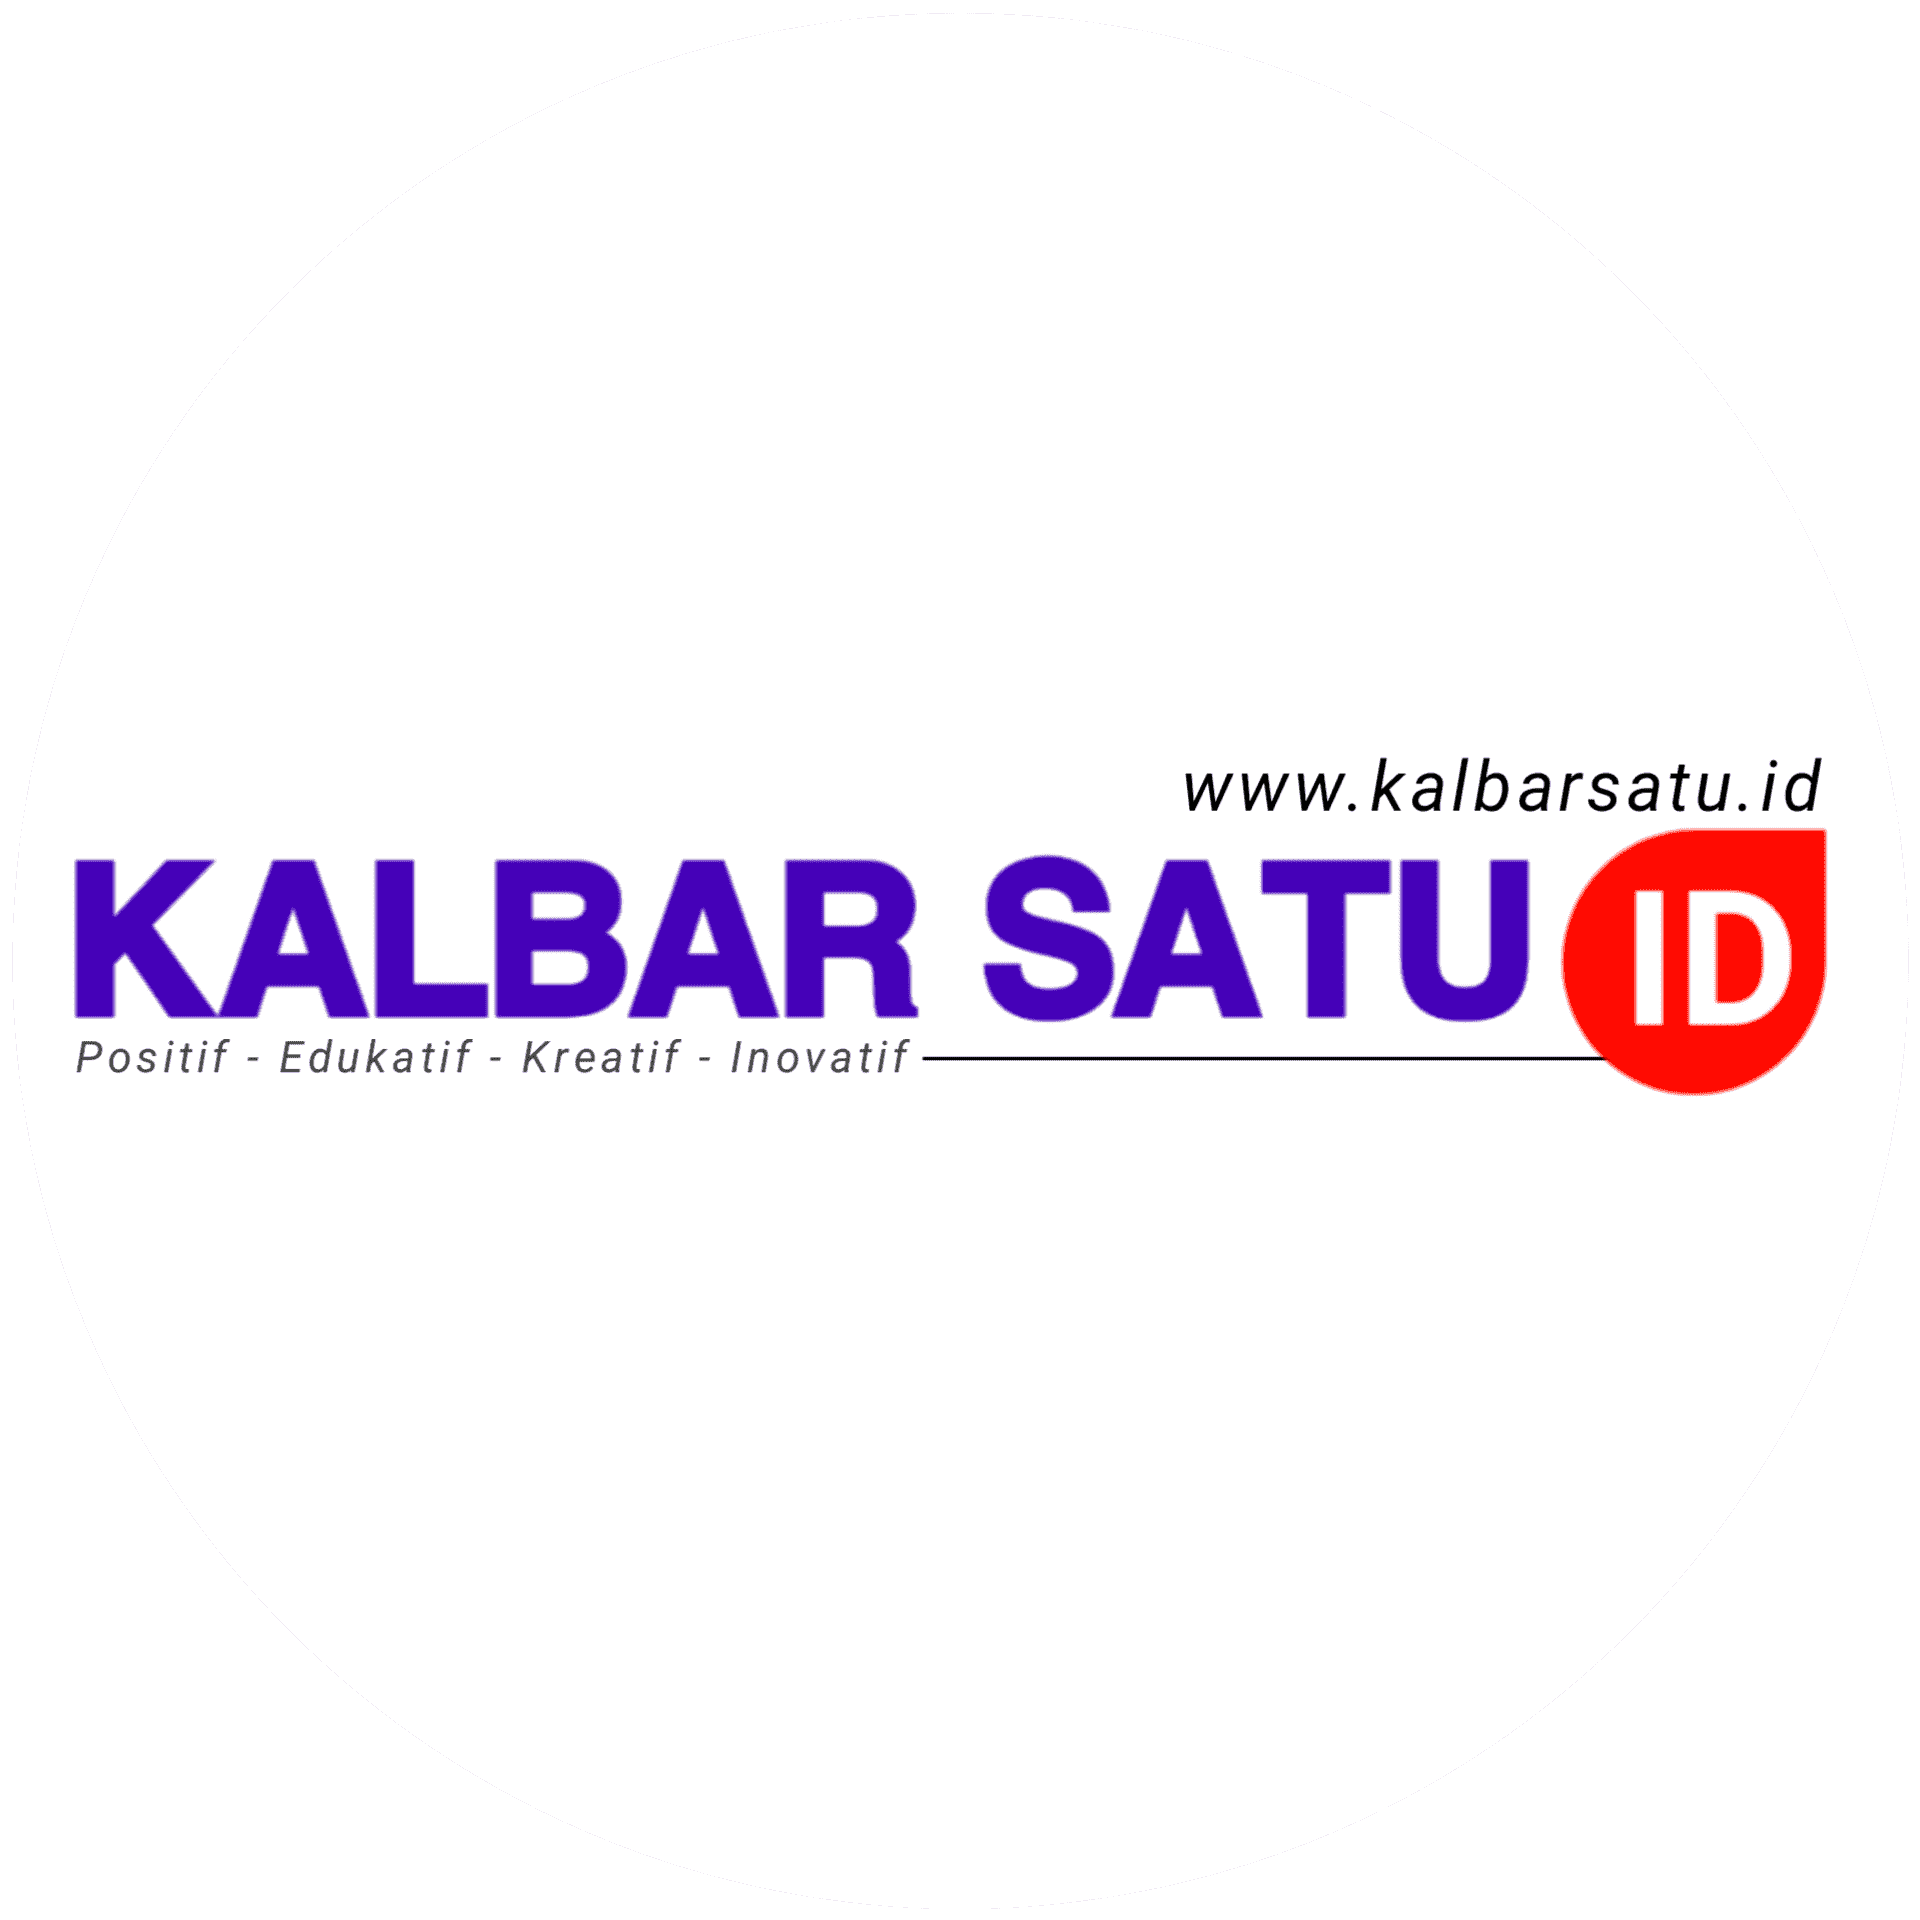 KALBAR SATU ID